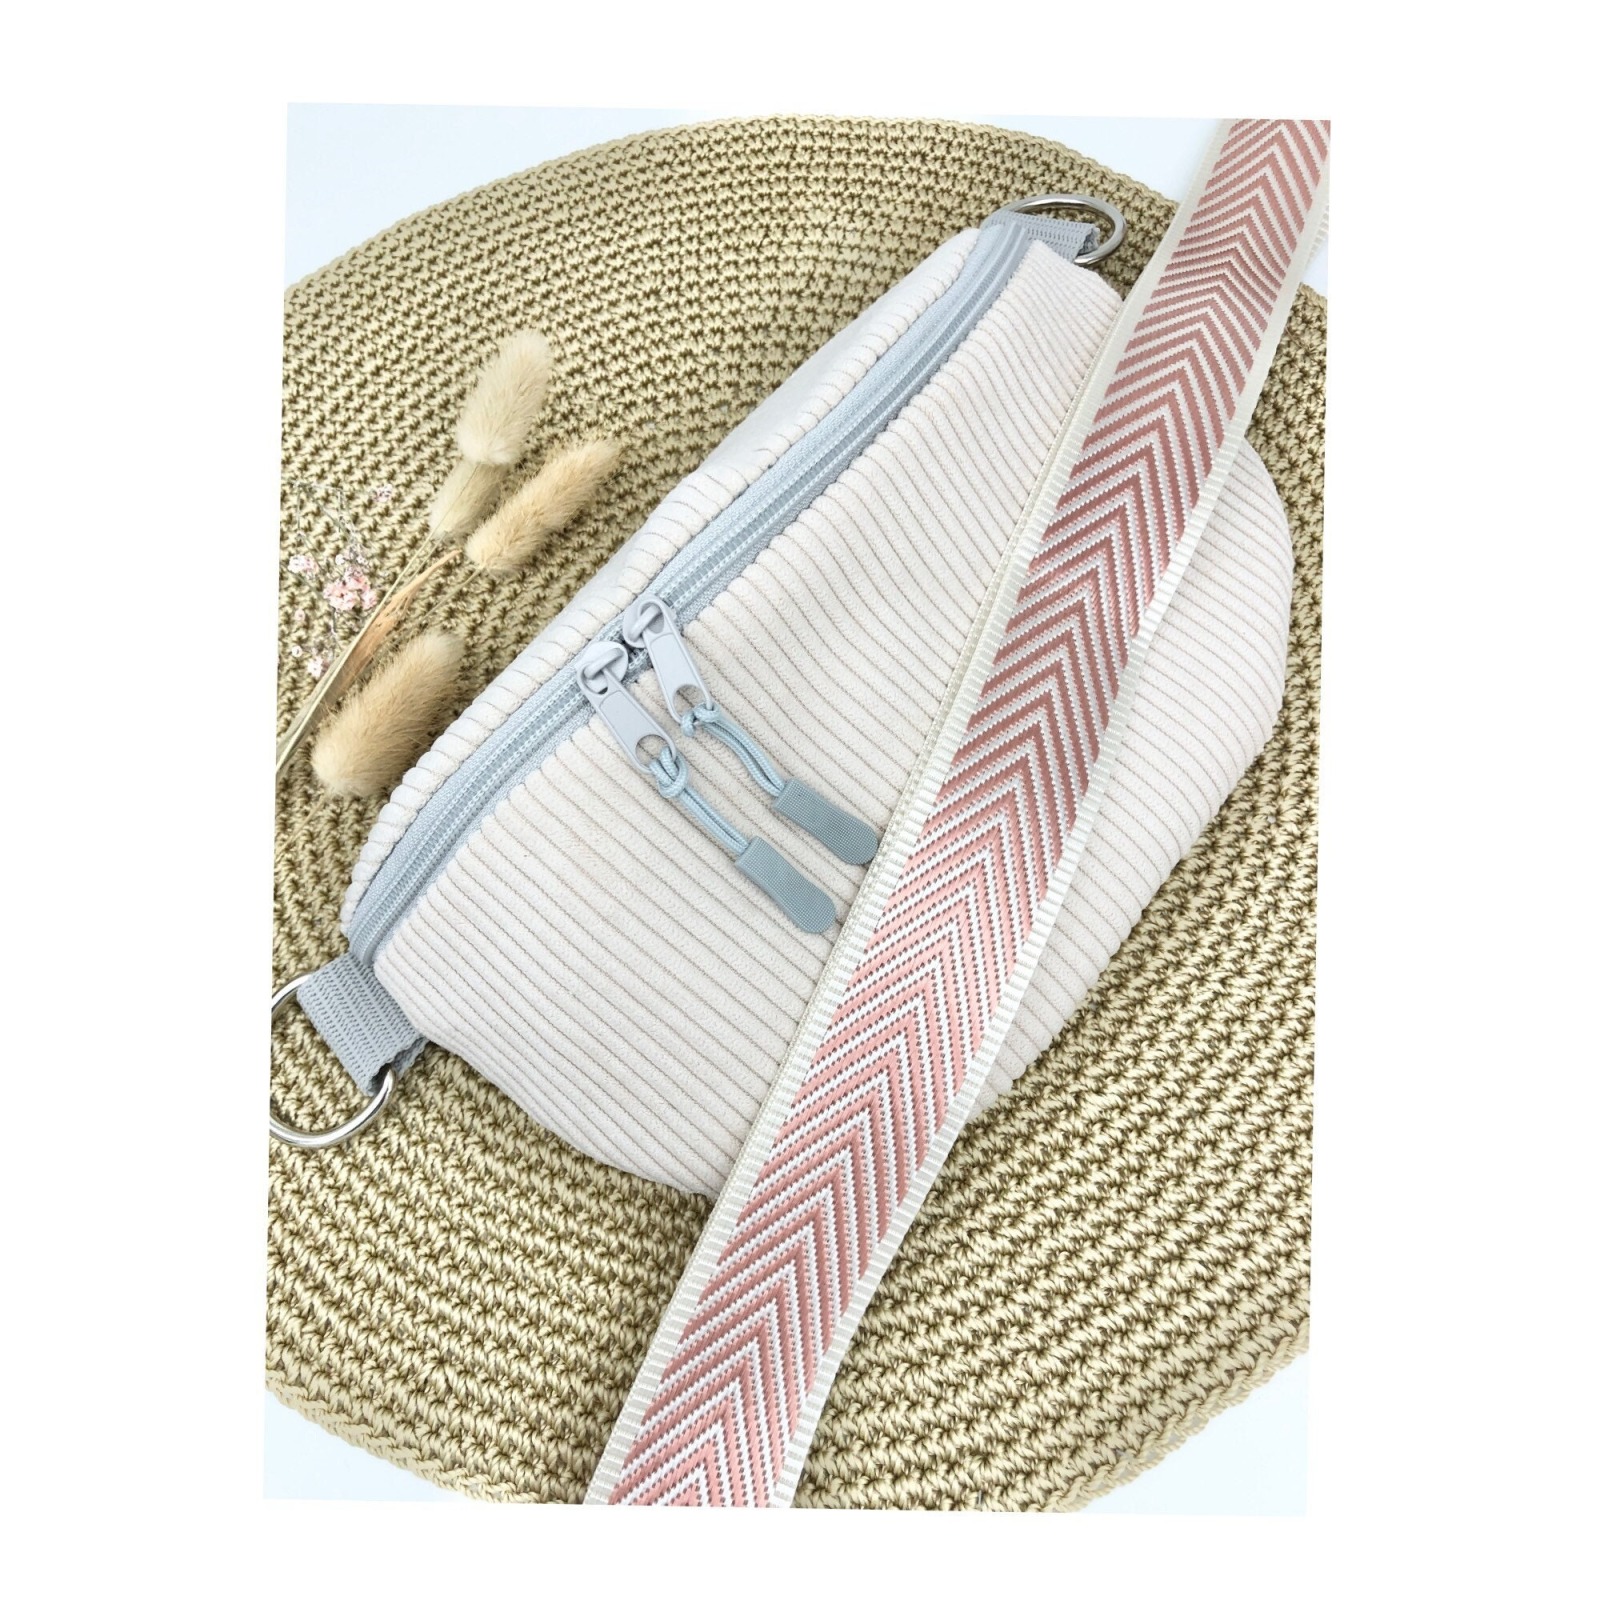 Bauchtasche / Crossbag Cord cremeweiß mit Taschengurt rosa Tasche Hipbag leicht und praktisch Kord